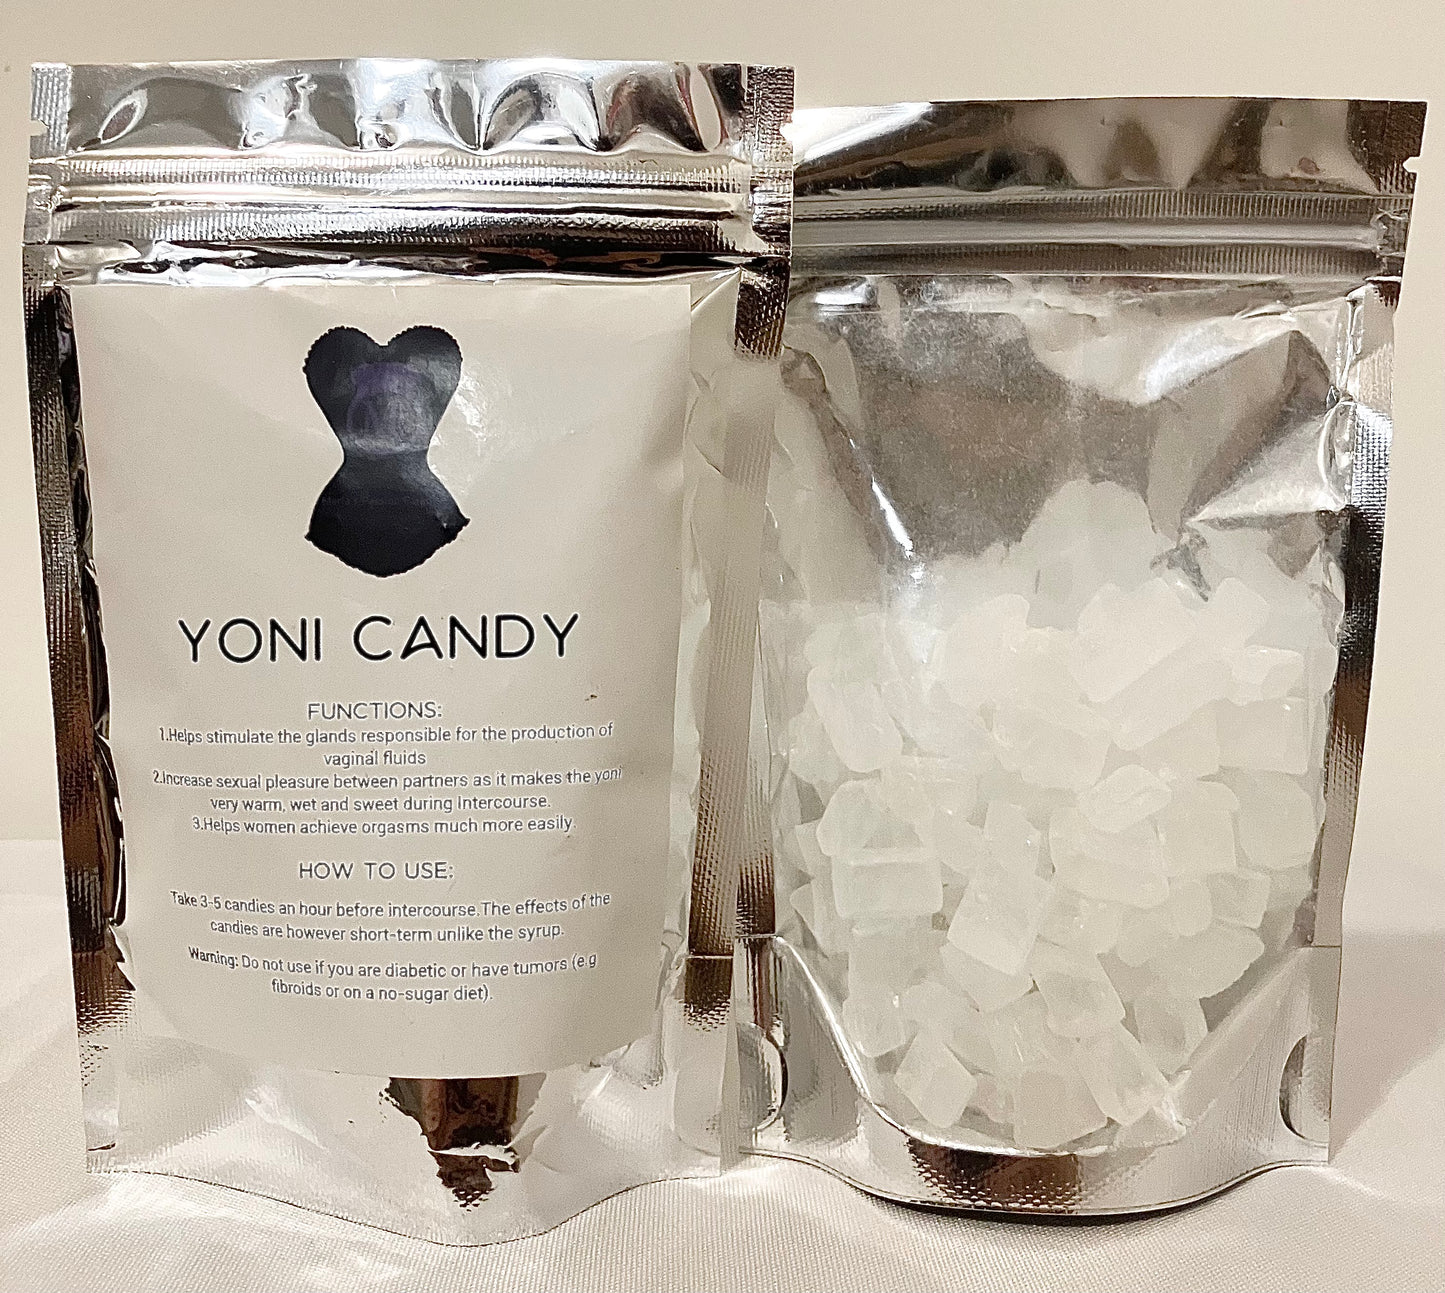 Yoni Candy